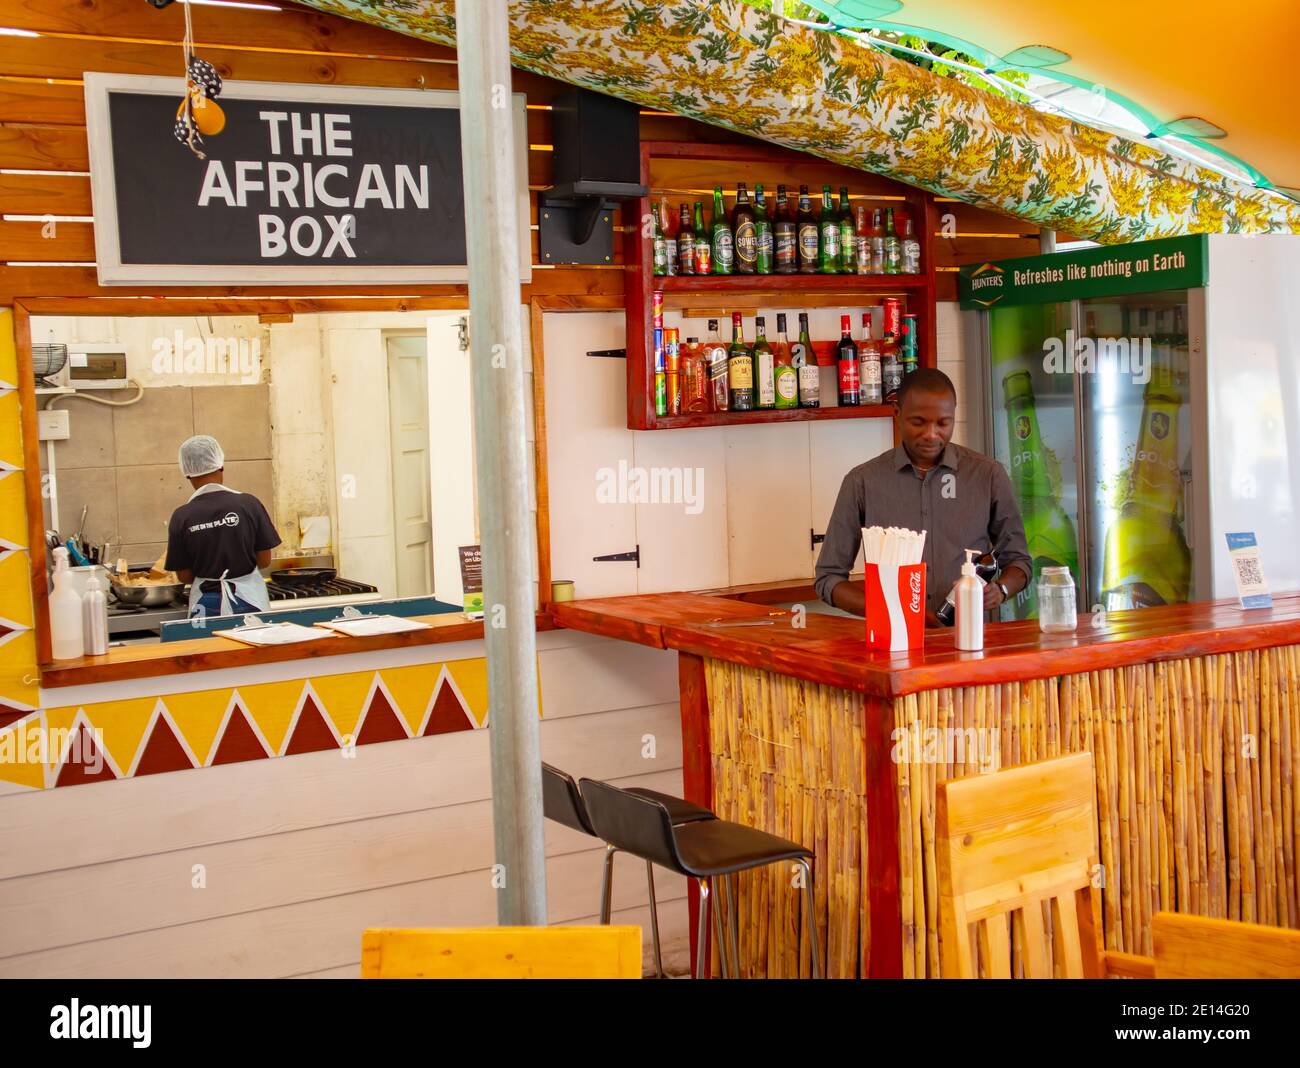 La boîte africaine Banque de photographies et d'images à haute résolution -  Alamy